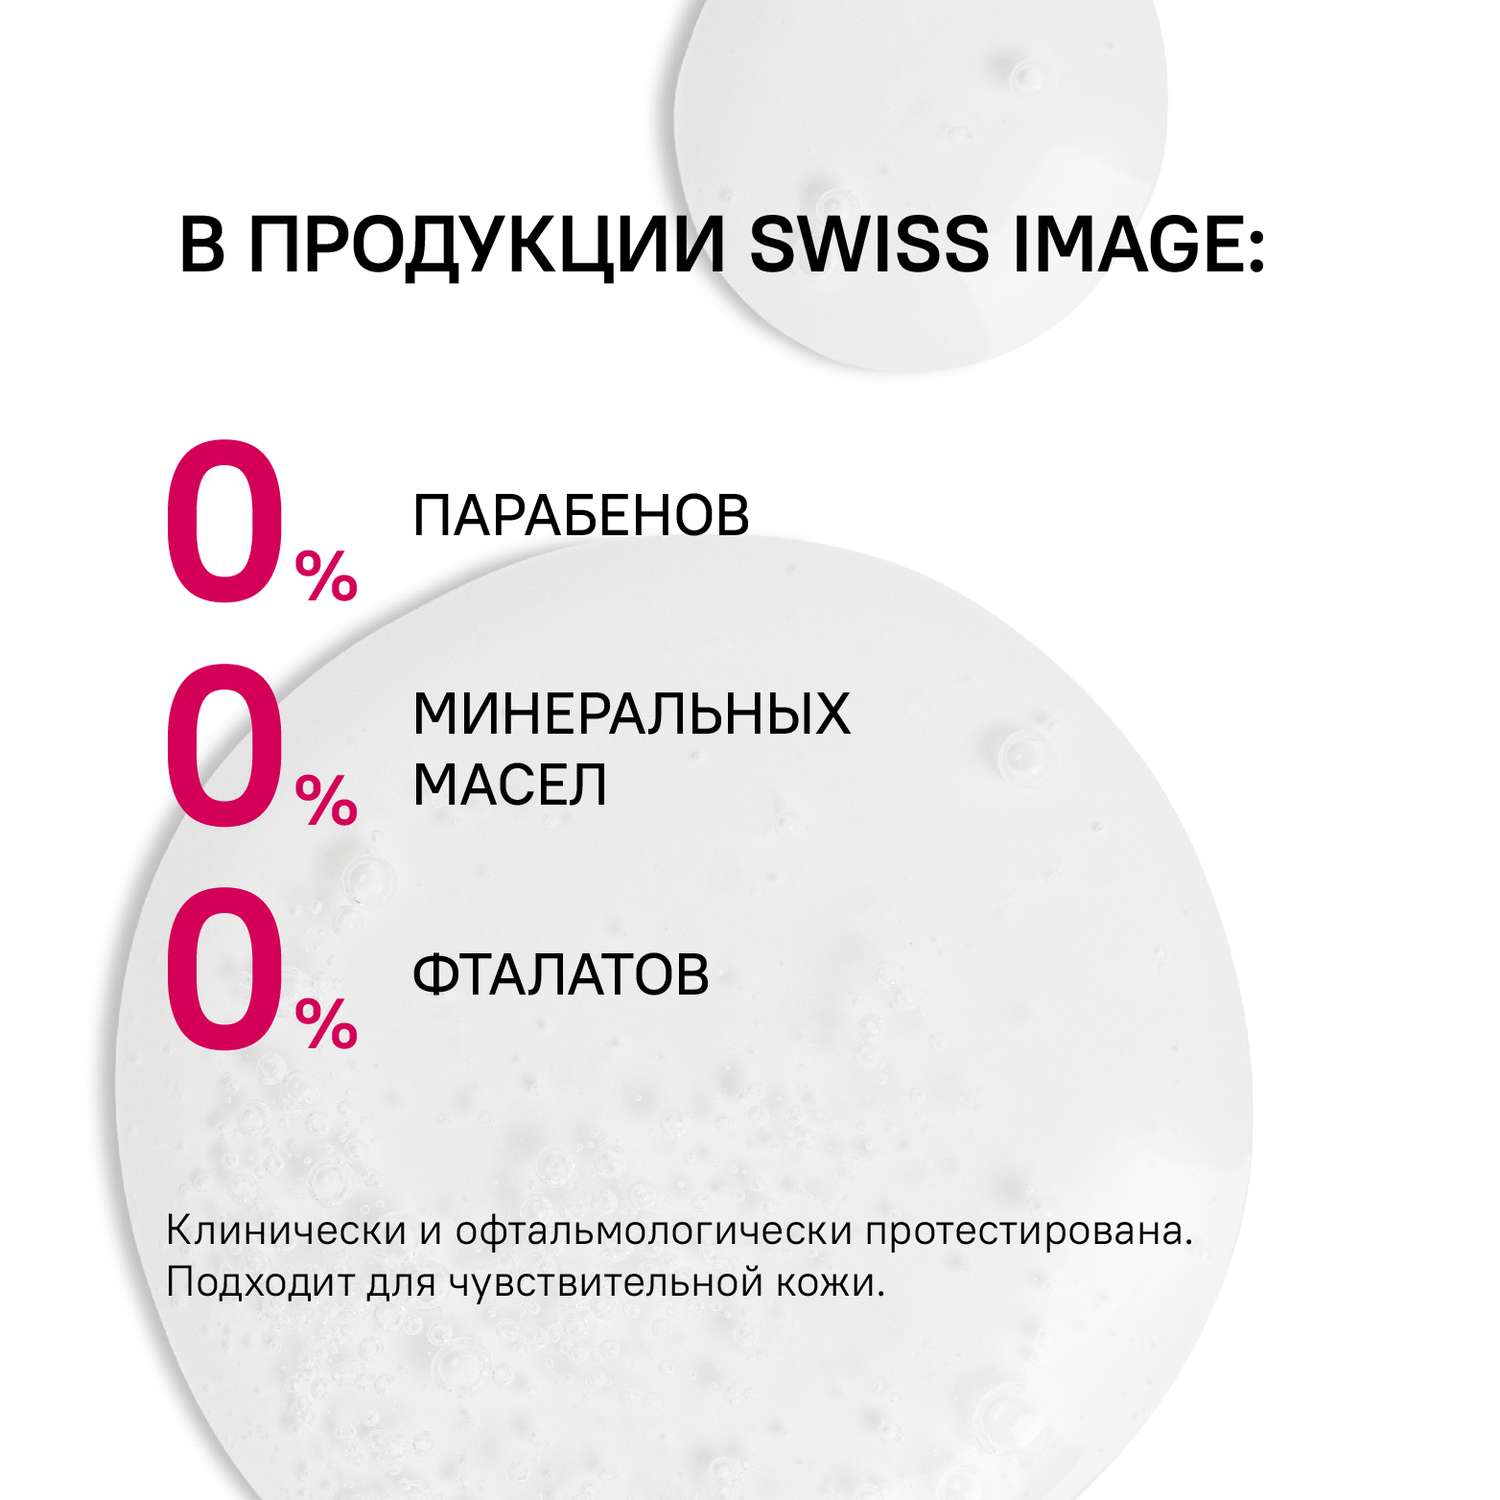 Питательная сыворотка Swiss image против морщин 36+ Антивозрастной уход 30мл - фото 8